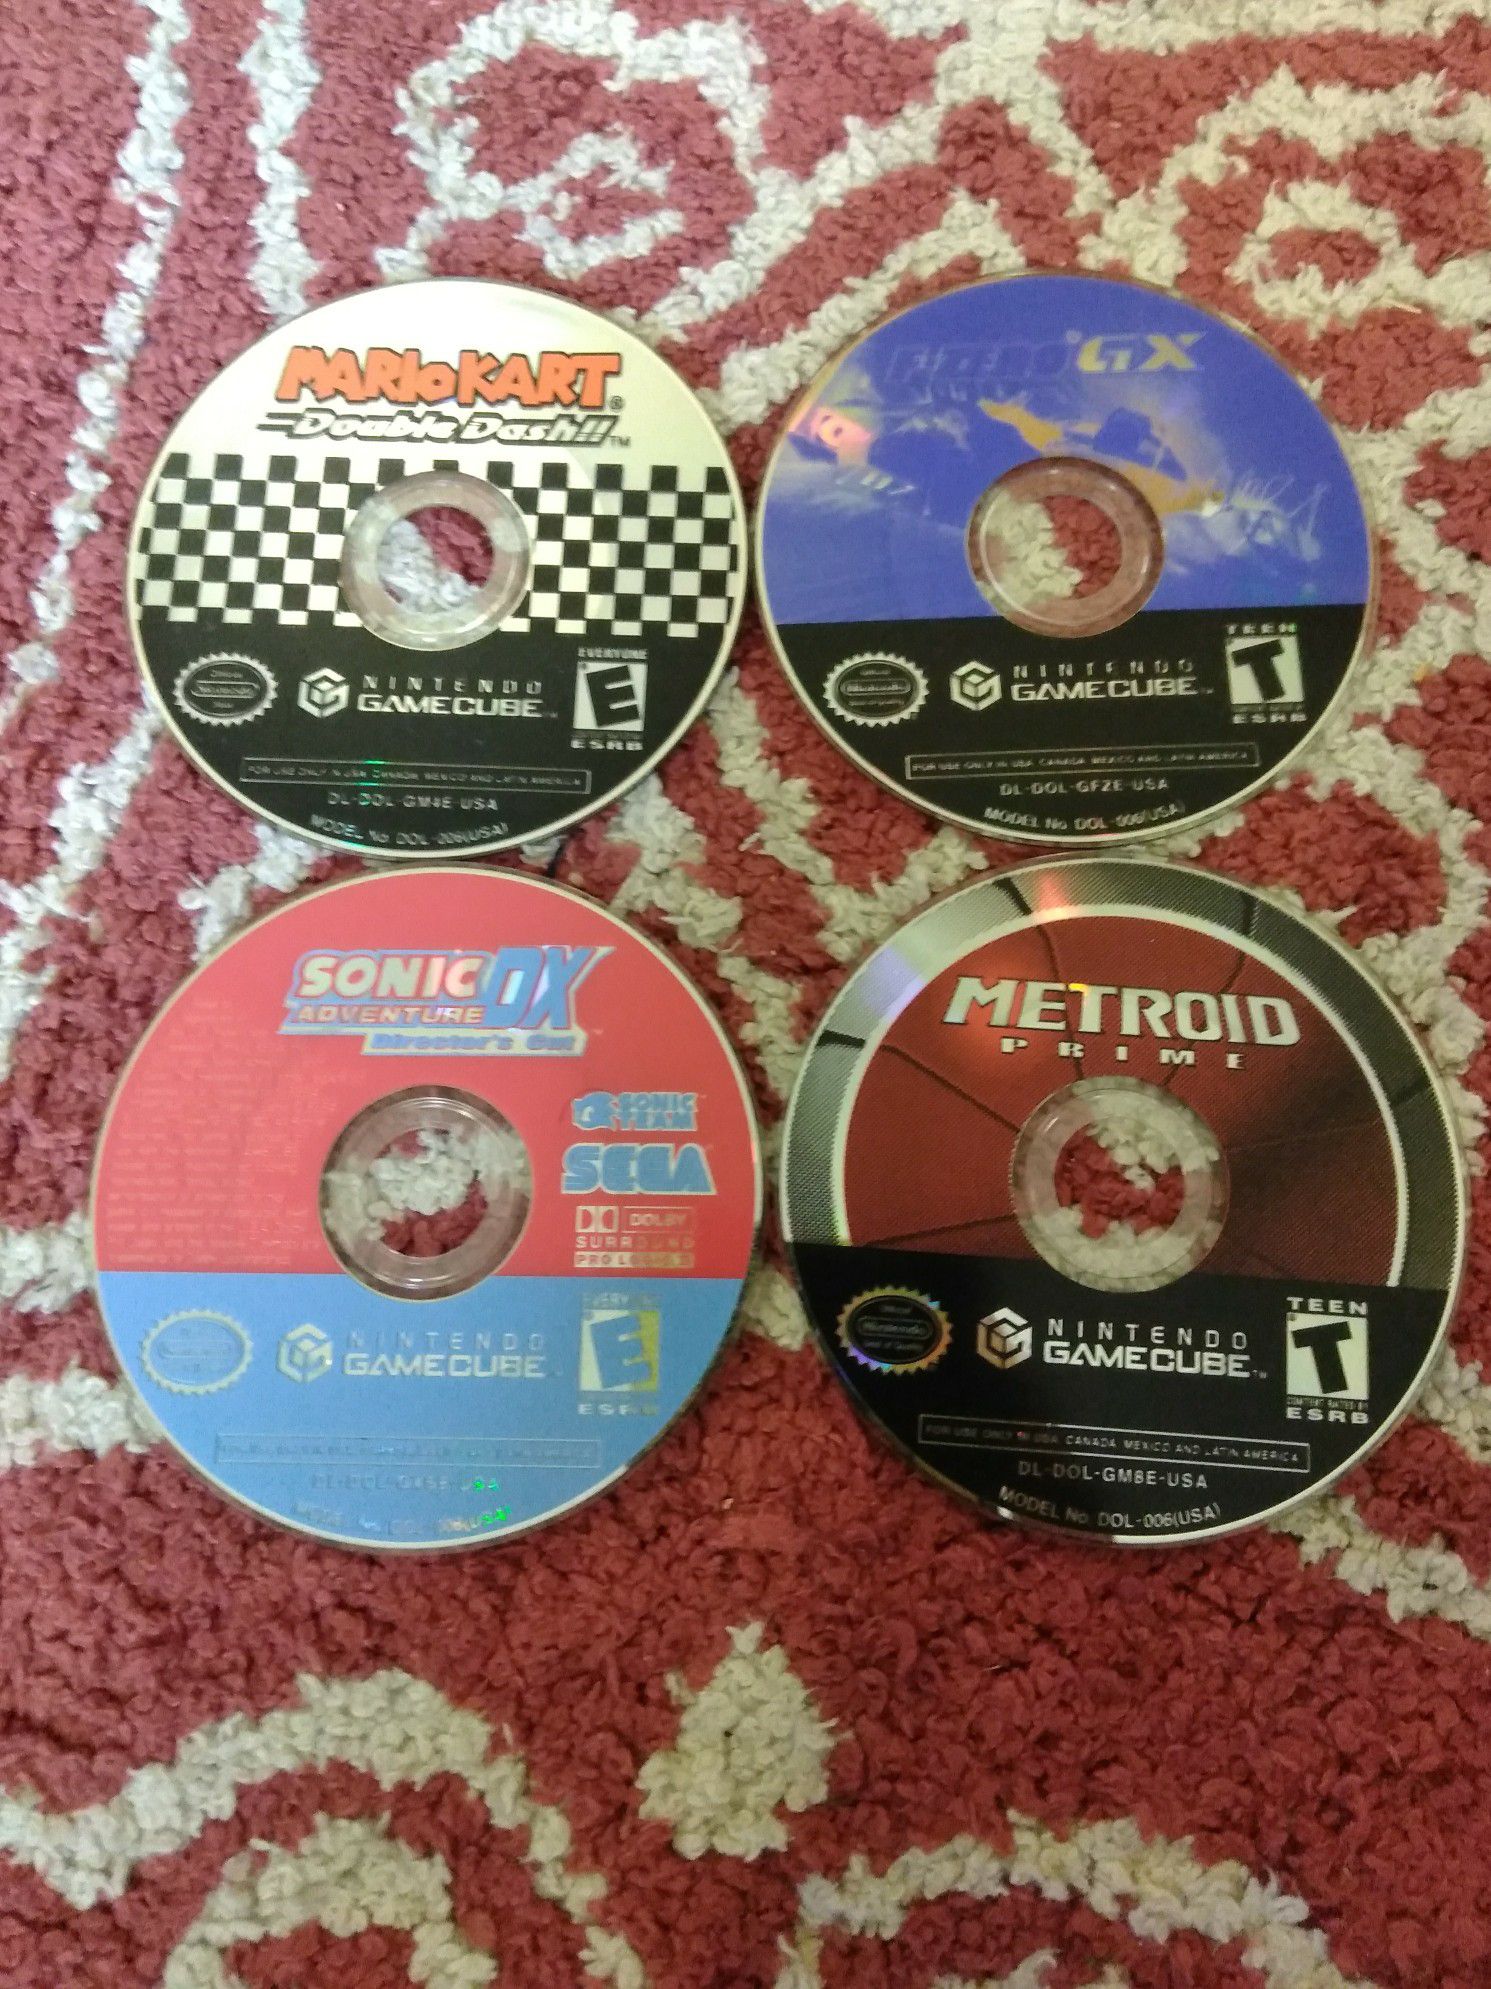 4 GameCube games